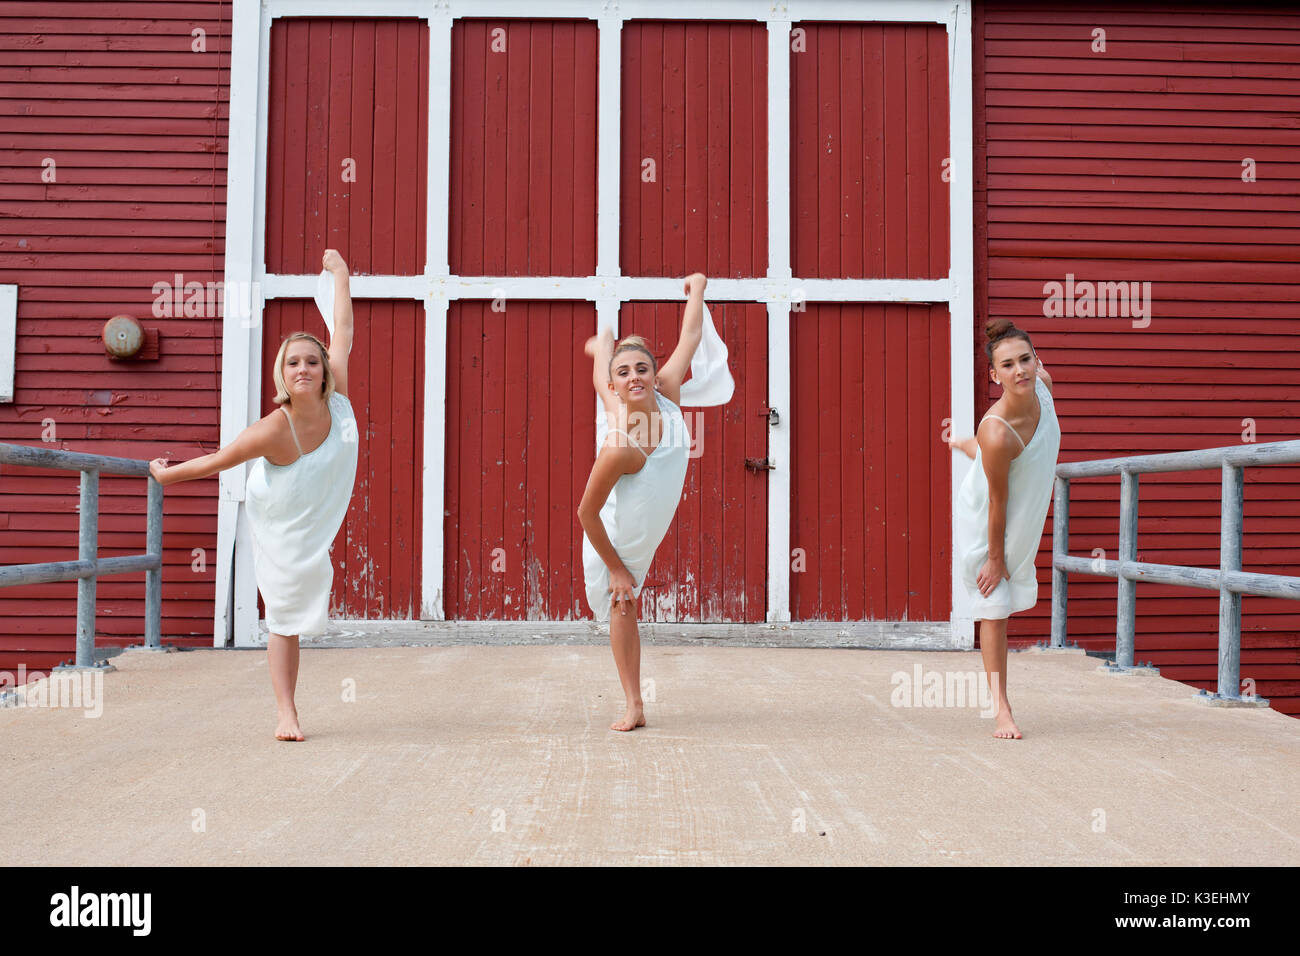 Trois sœurs en robes blanches dansant sur une terrasse en bois. Banque D'Images